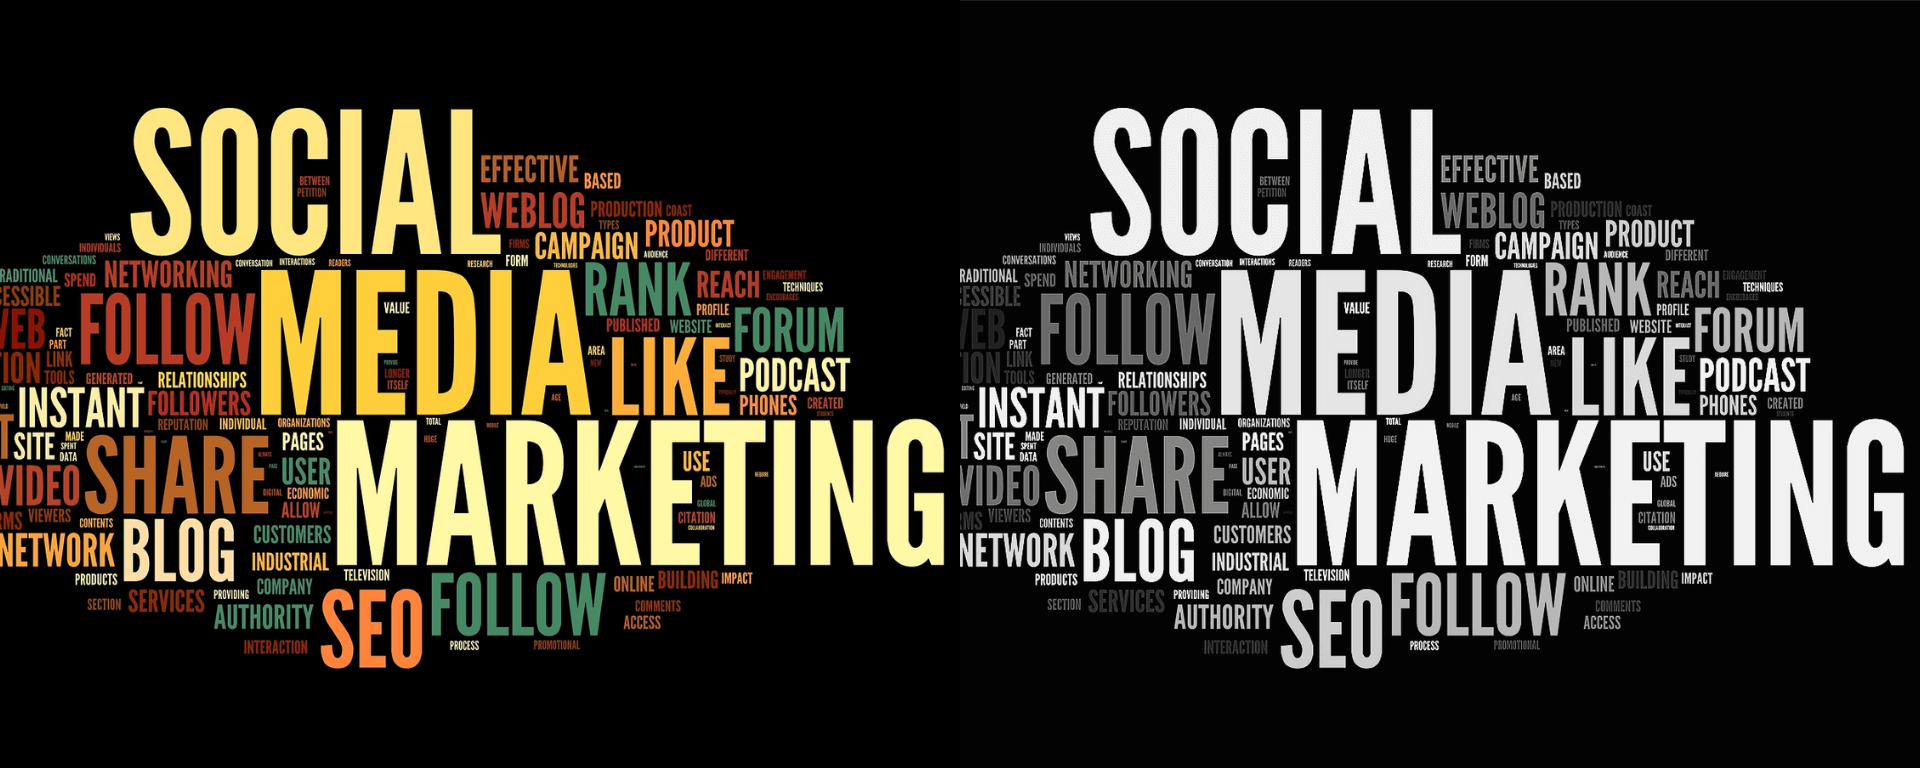 8 Tendências Futuras do Social Media Marketing que você precisa saber